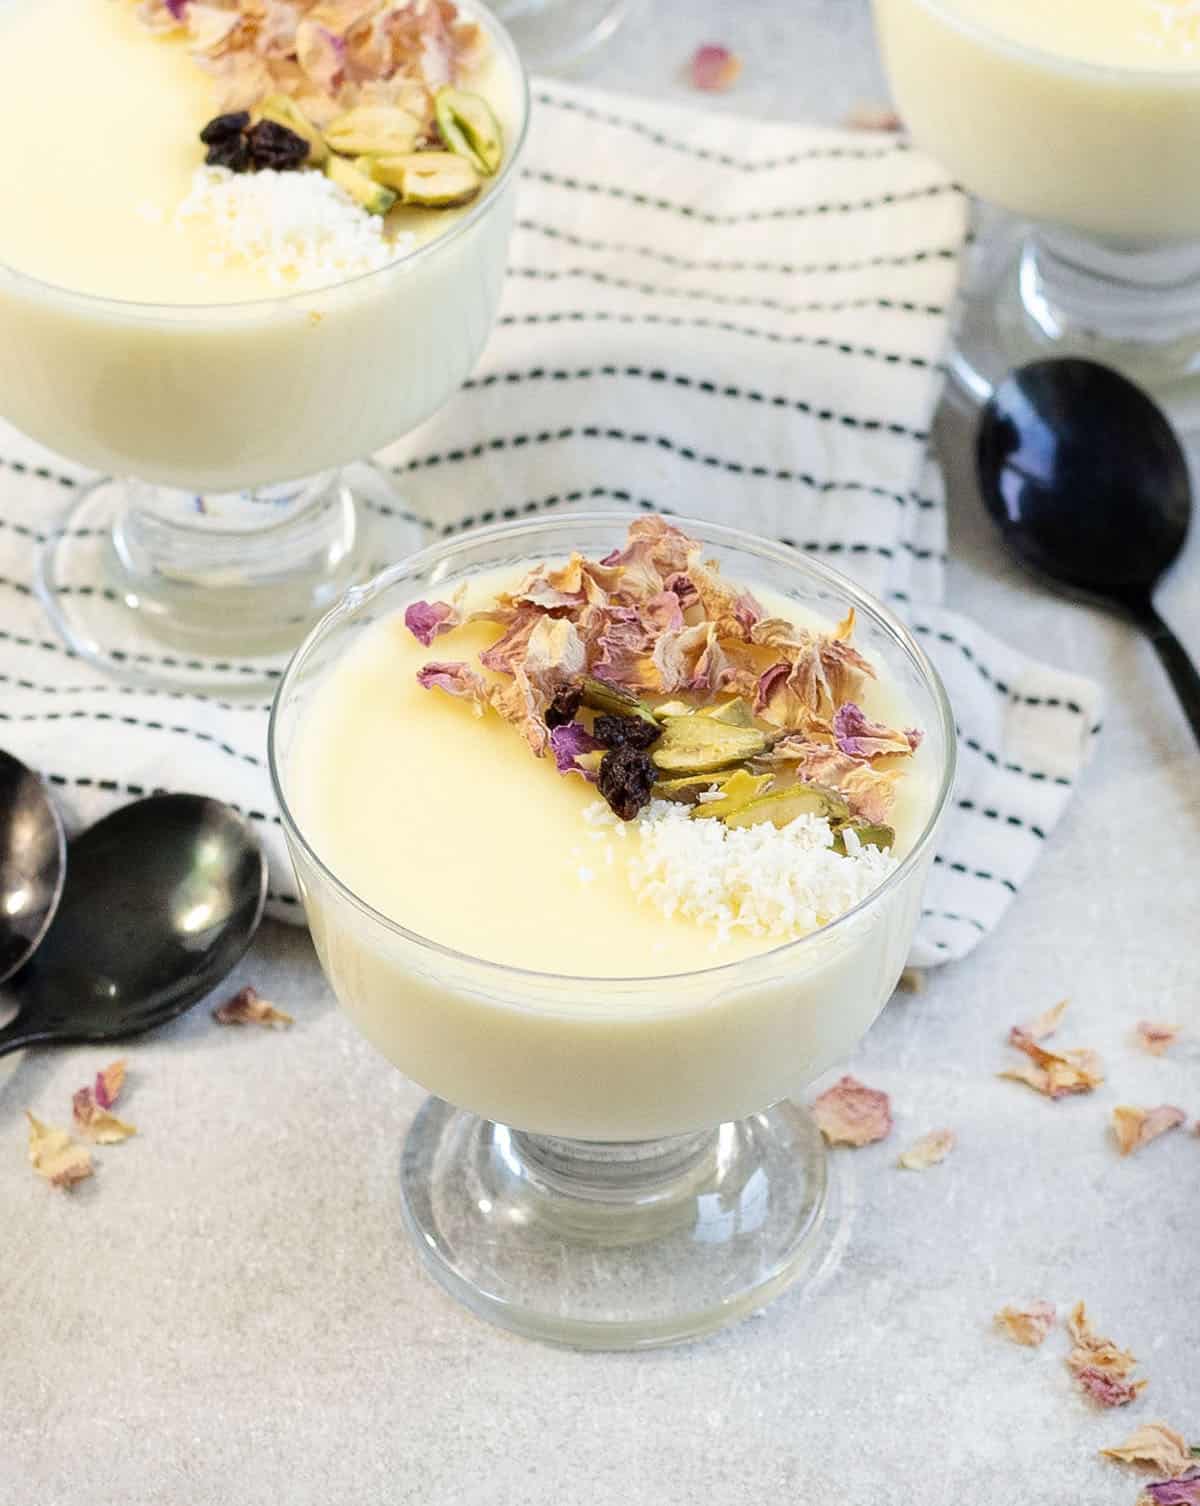 Mahalabia (Milk Pudding)